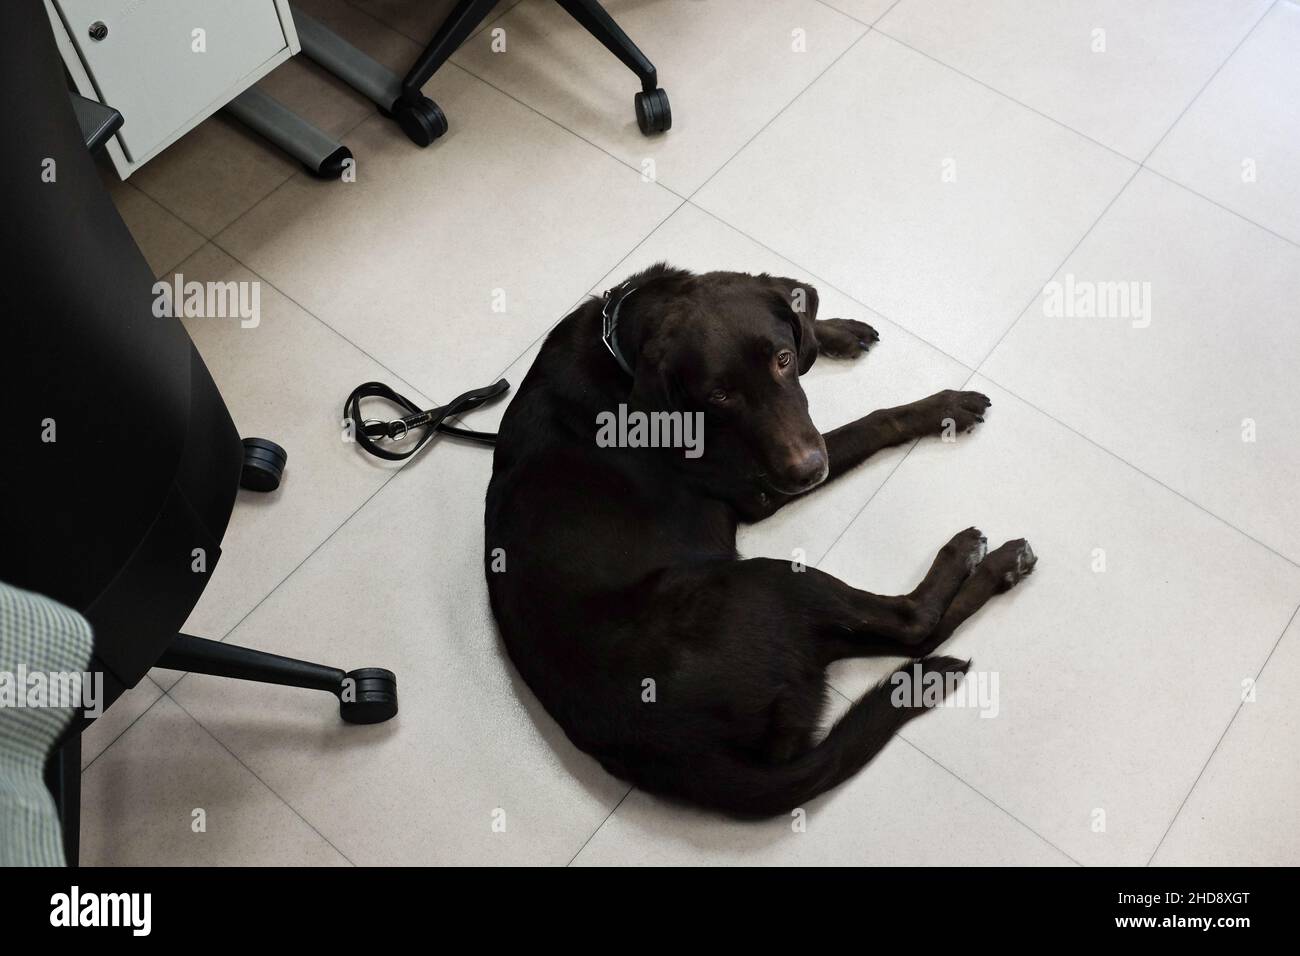 Centro de contacto de Ilunion BPO. Camila, un perro guía, sentada por su propietaria, la agente Ana Patricio Espejo, ciega. Foto de stock